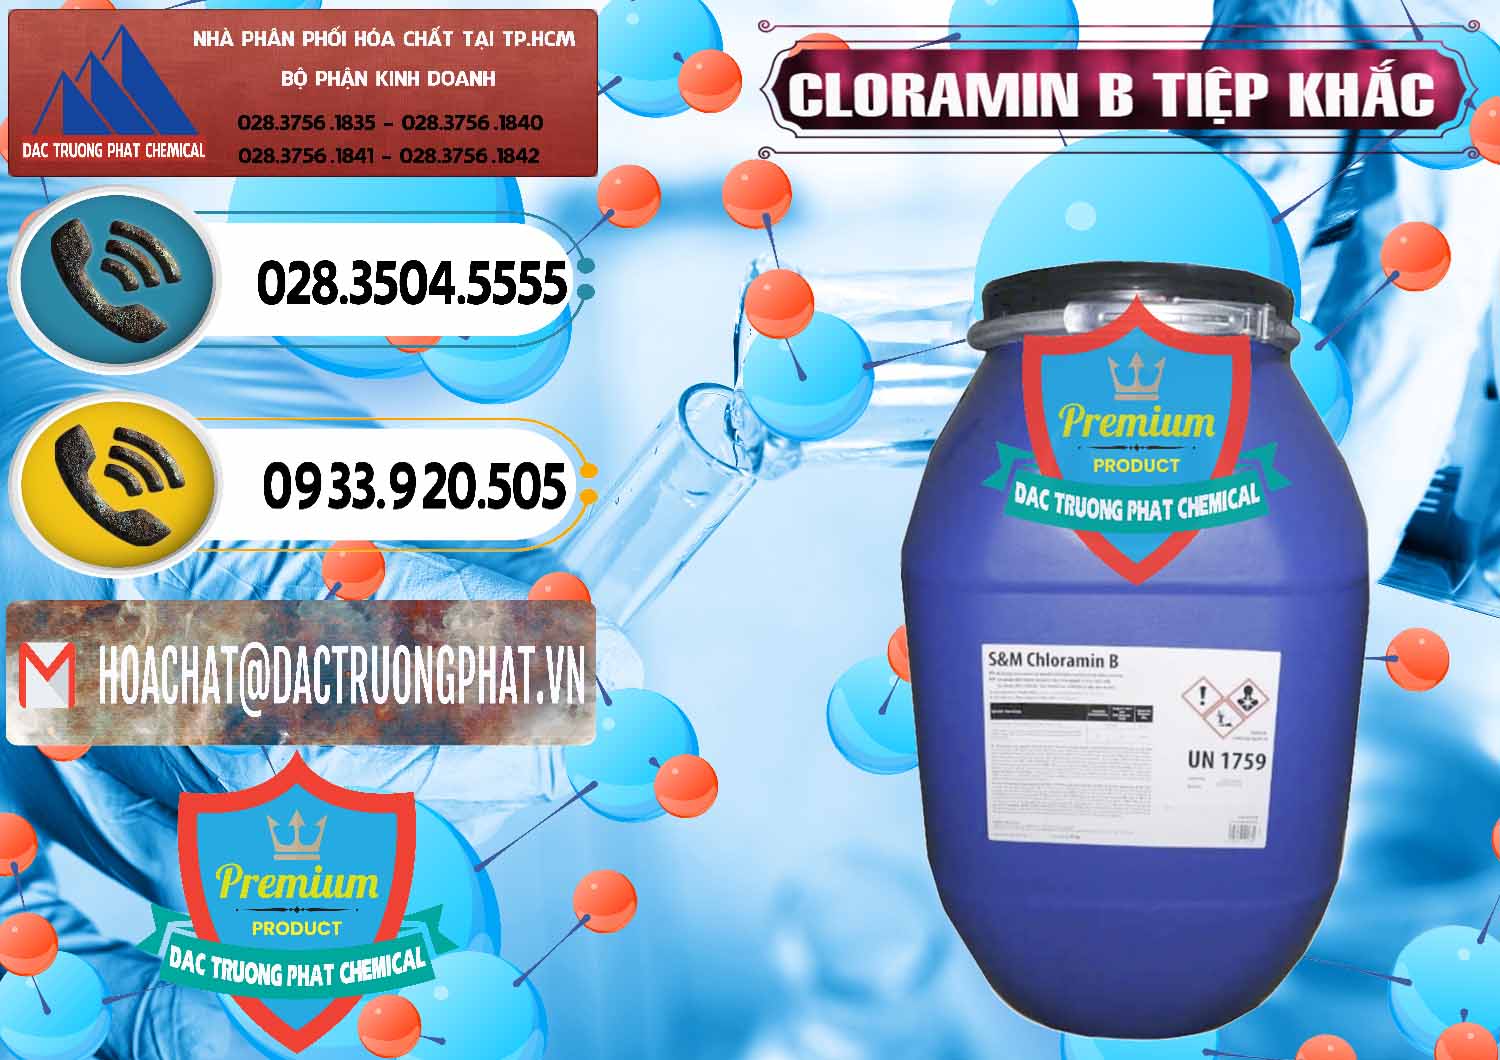 Đơn vị chuyên bán _ cung cấp Cloramin B Cộng Hòa Séc Tiệp Khắc Czech Republic - 0299 - Nơi bán ( cung cấp ) hóa chất tại TP.HCM - hoachatdetnhuom.vn